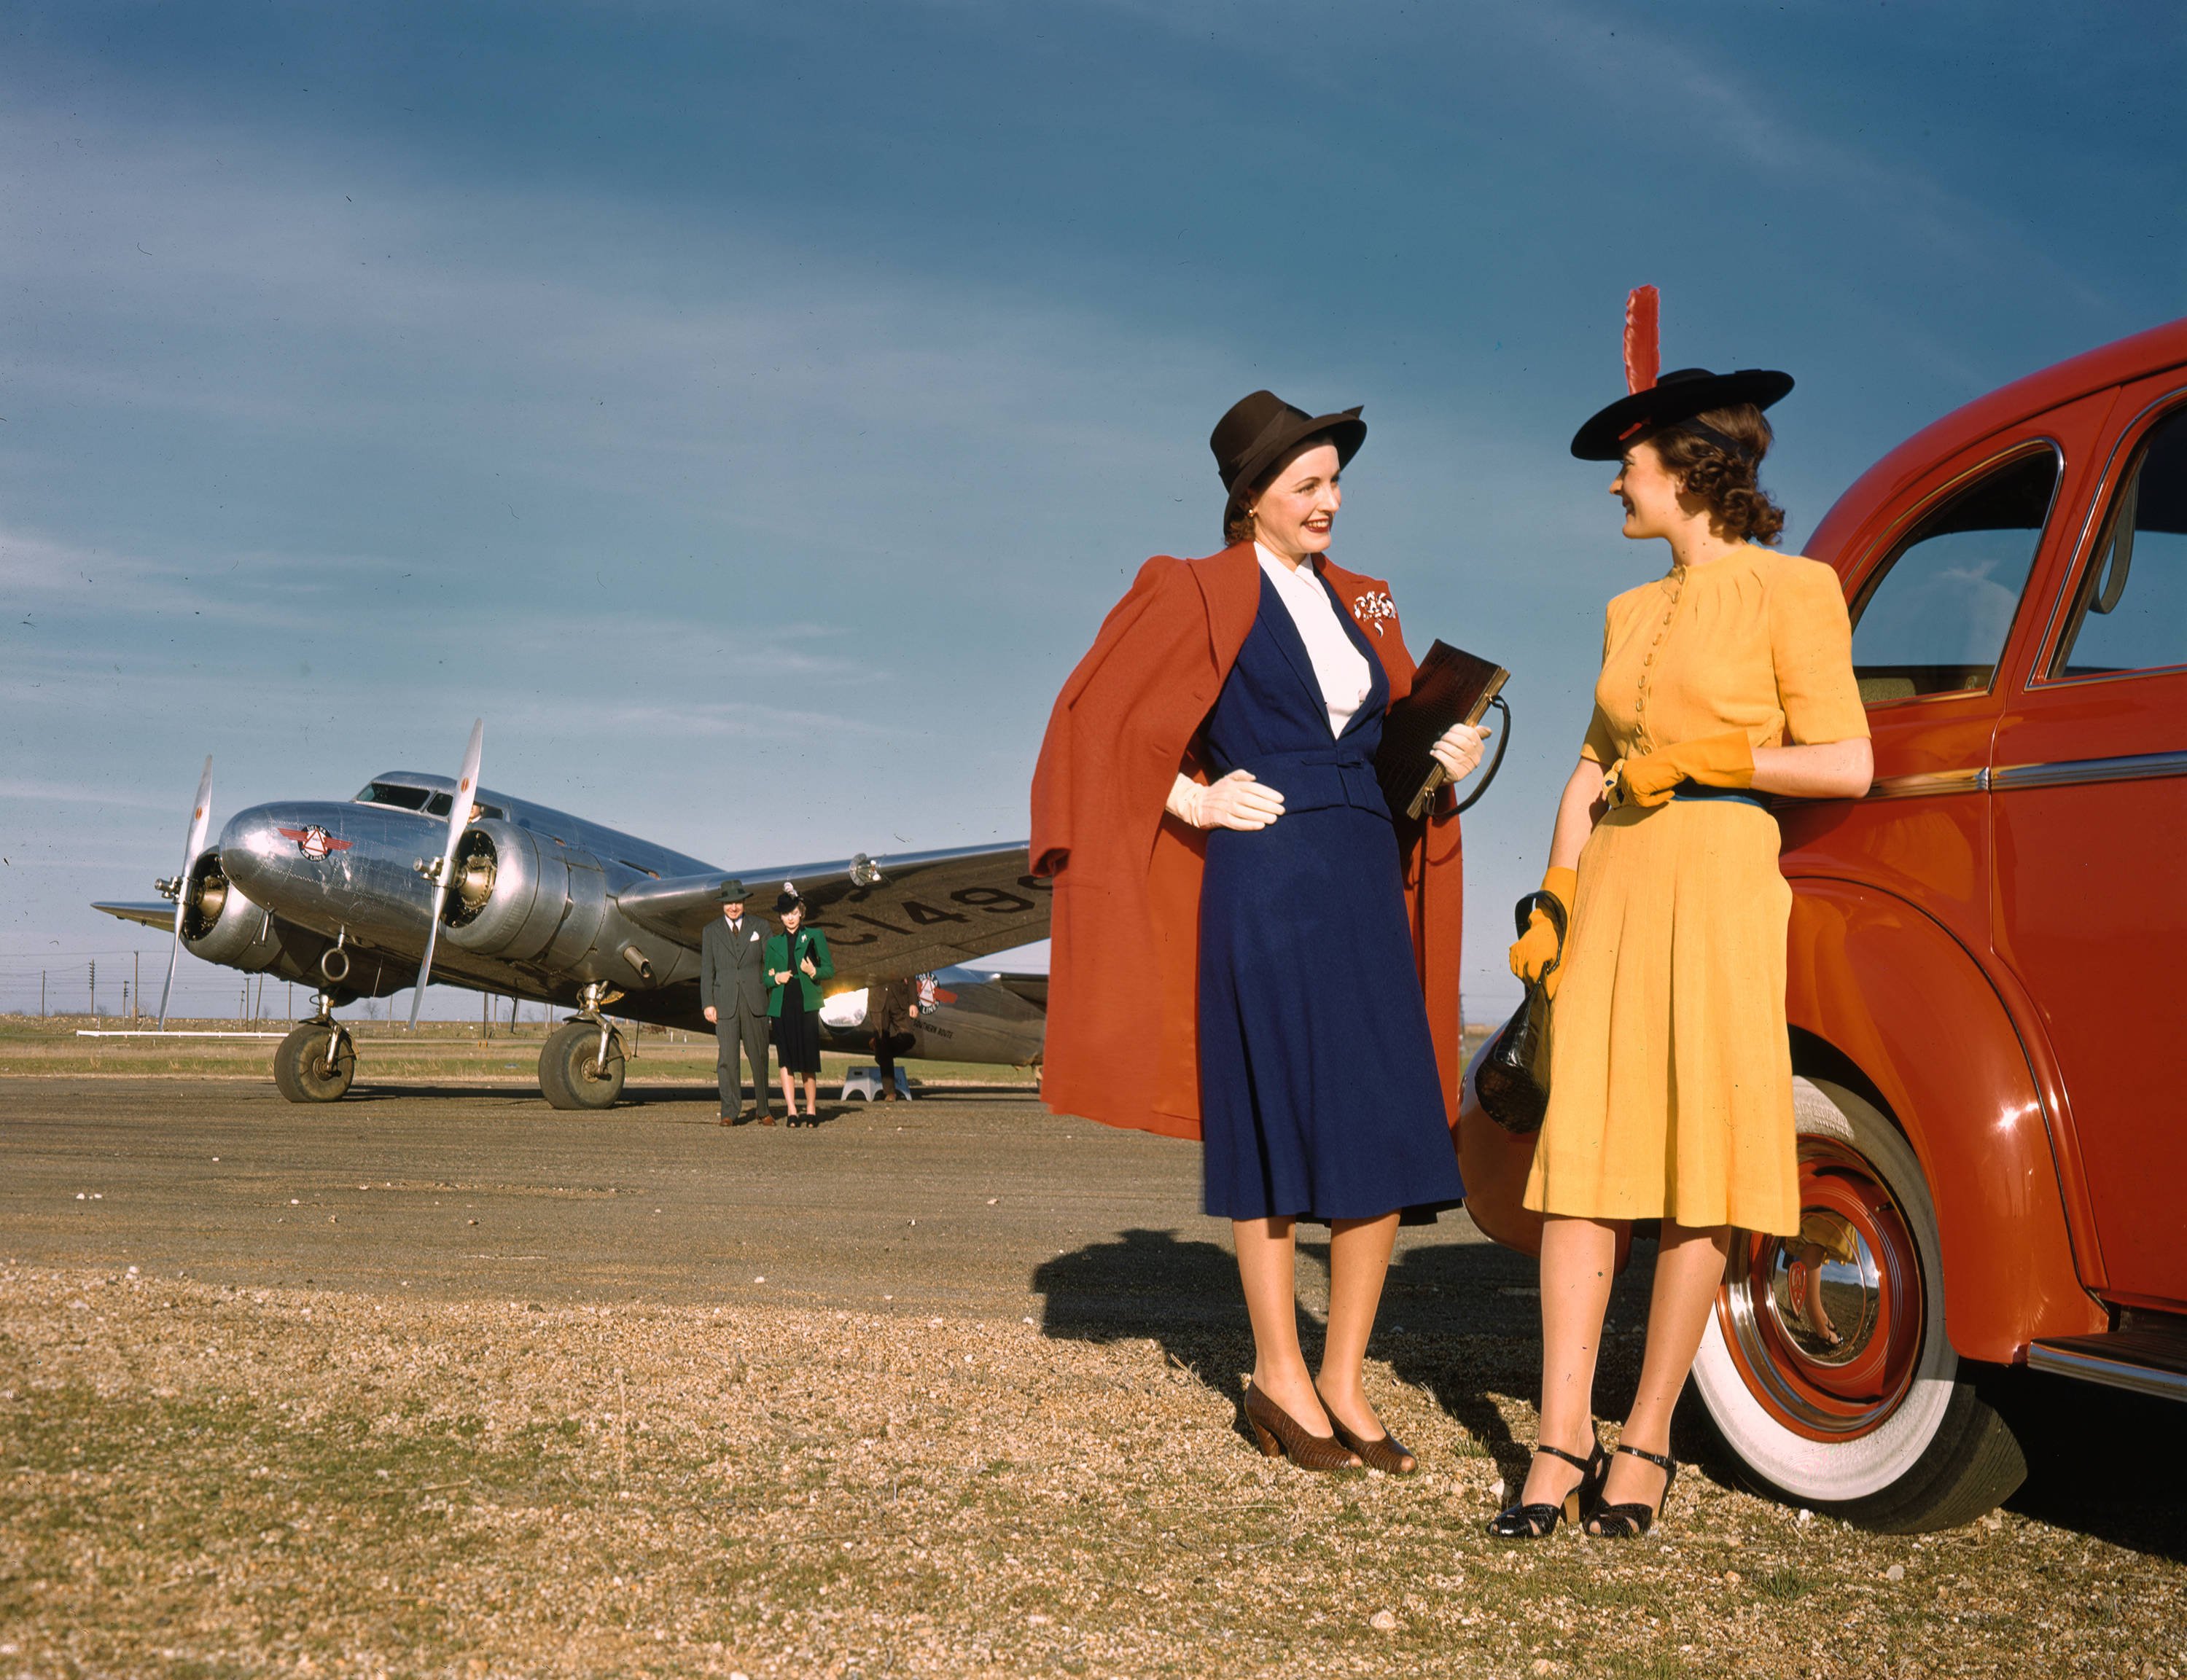 Самолет пожилые люди. 40е Америка. США 1940-Е. Kodachrome пленка 1935. Америка 1940е.